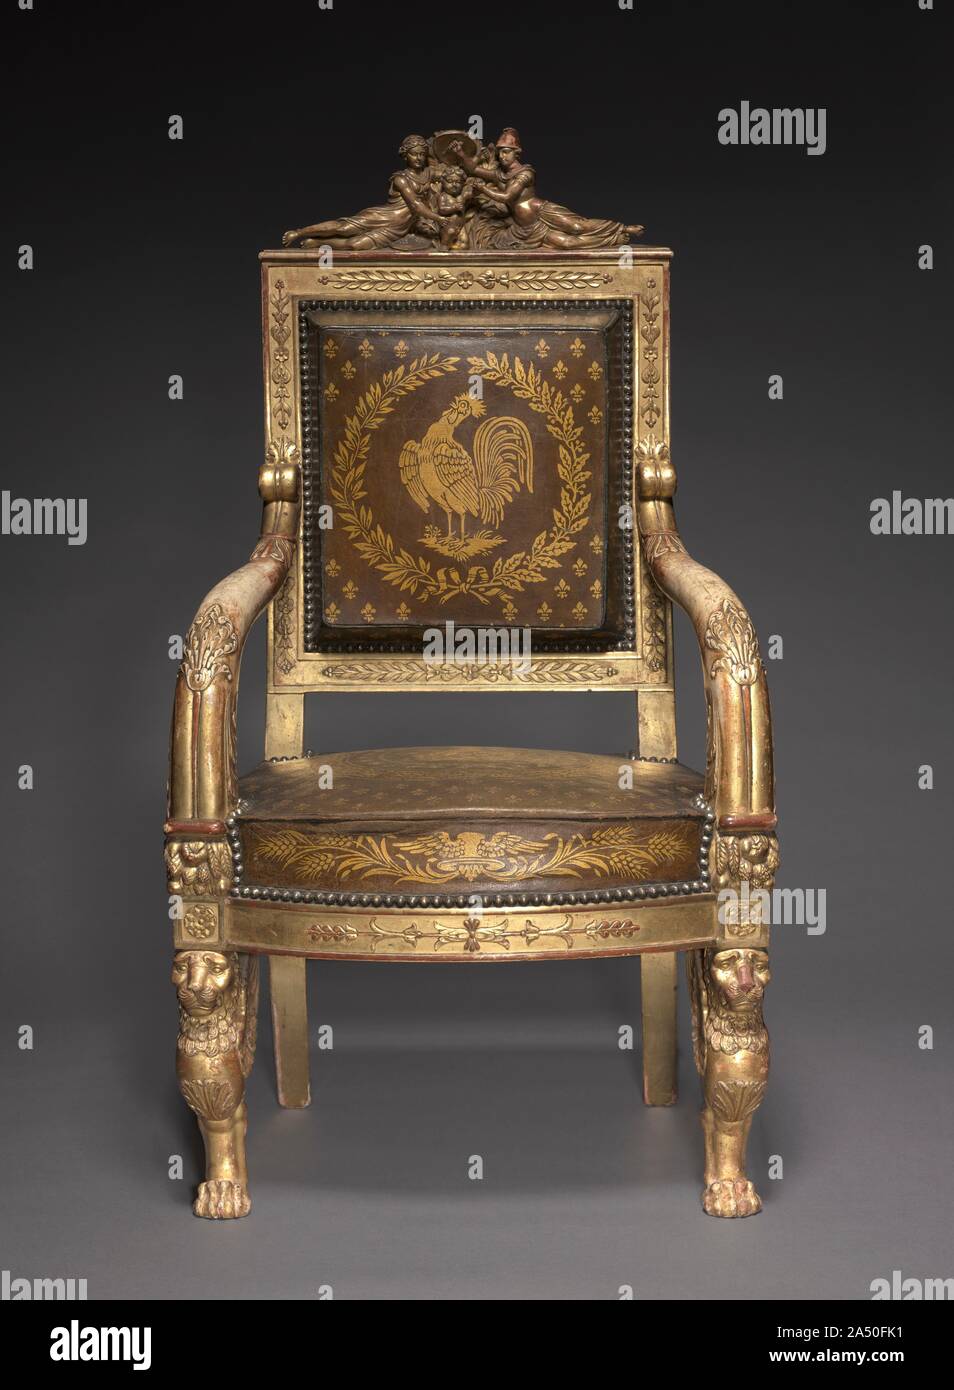 El trono del niño, de 1822. Esta silla está hecha para los jóvenes,  presunto sucesor al trono de Francia quien gobernó brevemente como Henri V  en 1830, la última de la línea